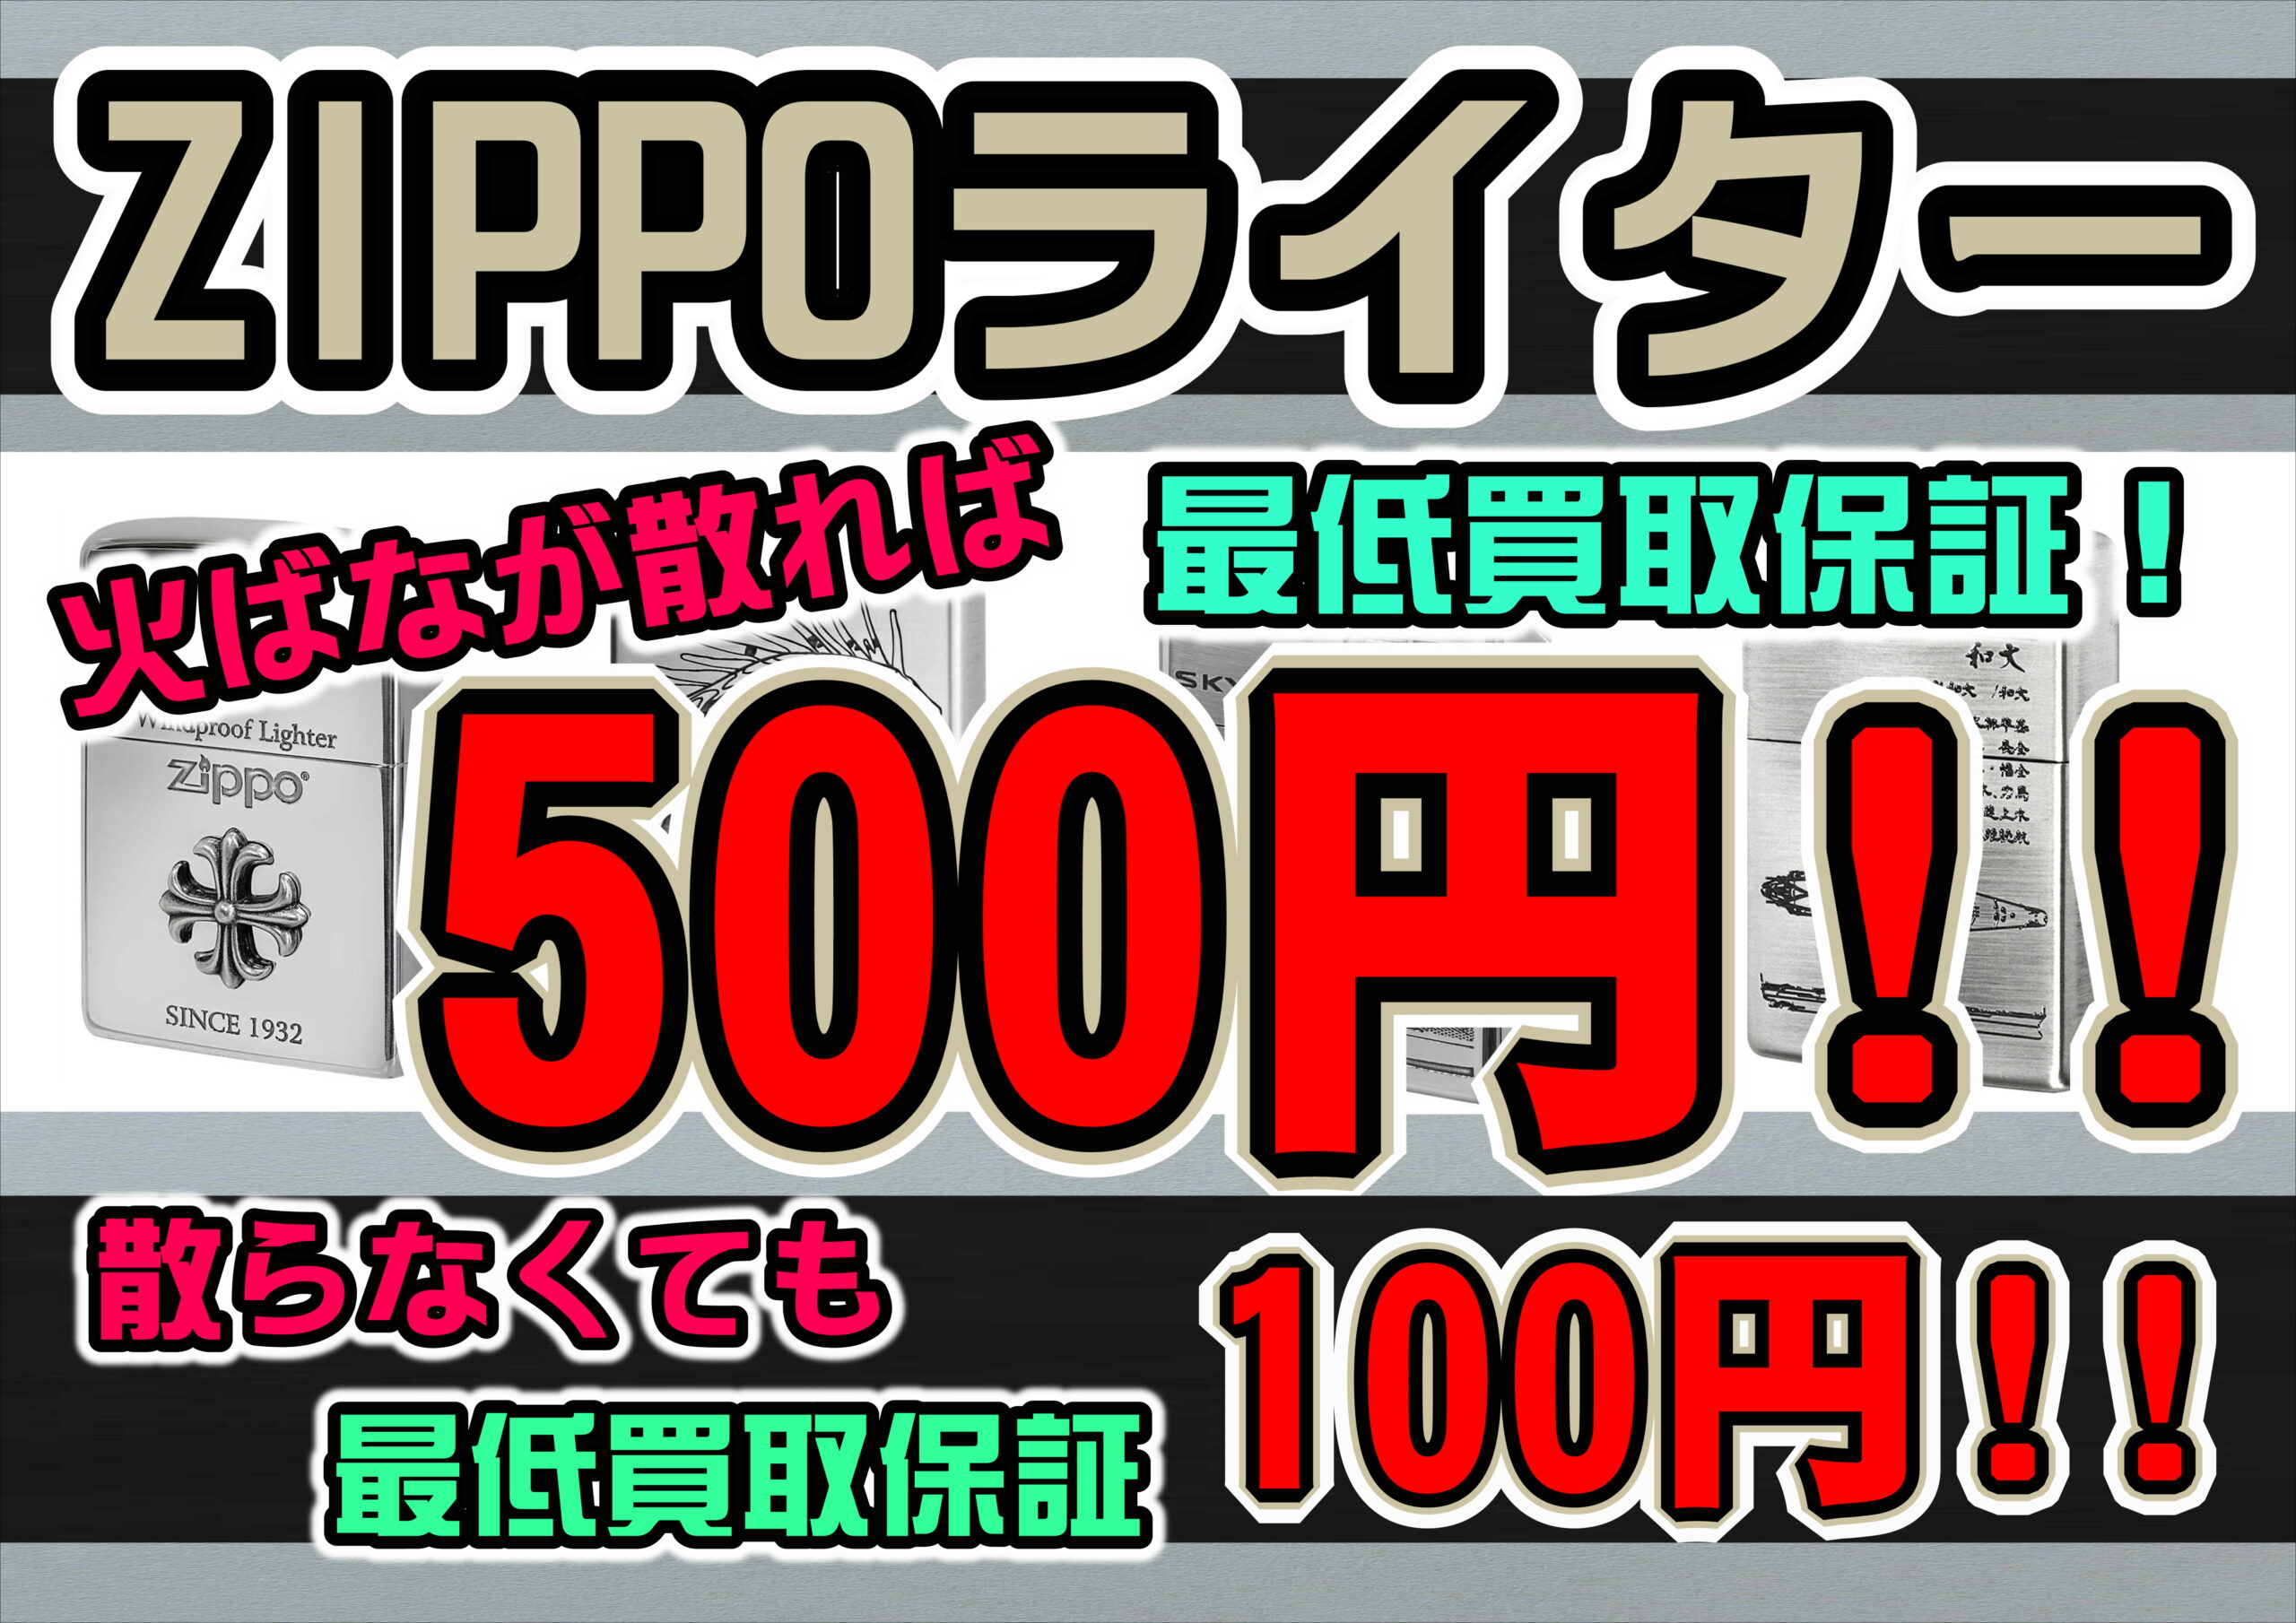 【リサイクルマート大橋店】Zippo ジッポーライター買取保証キャンペーン